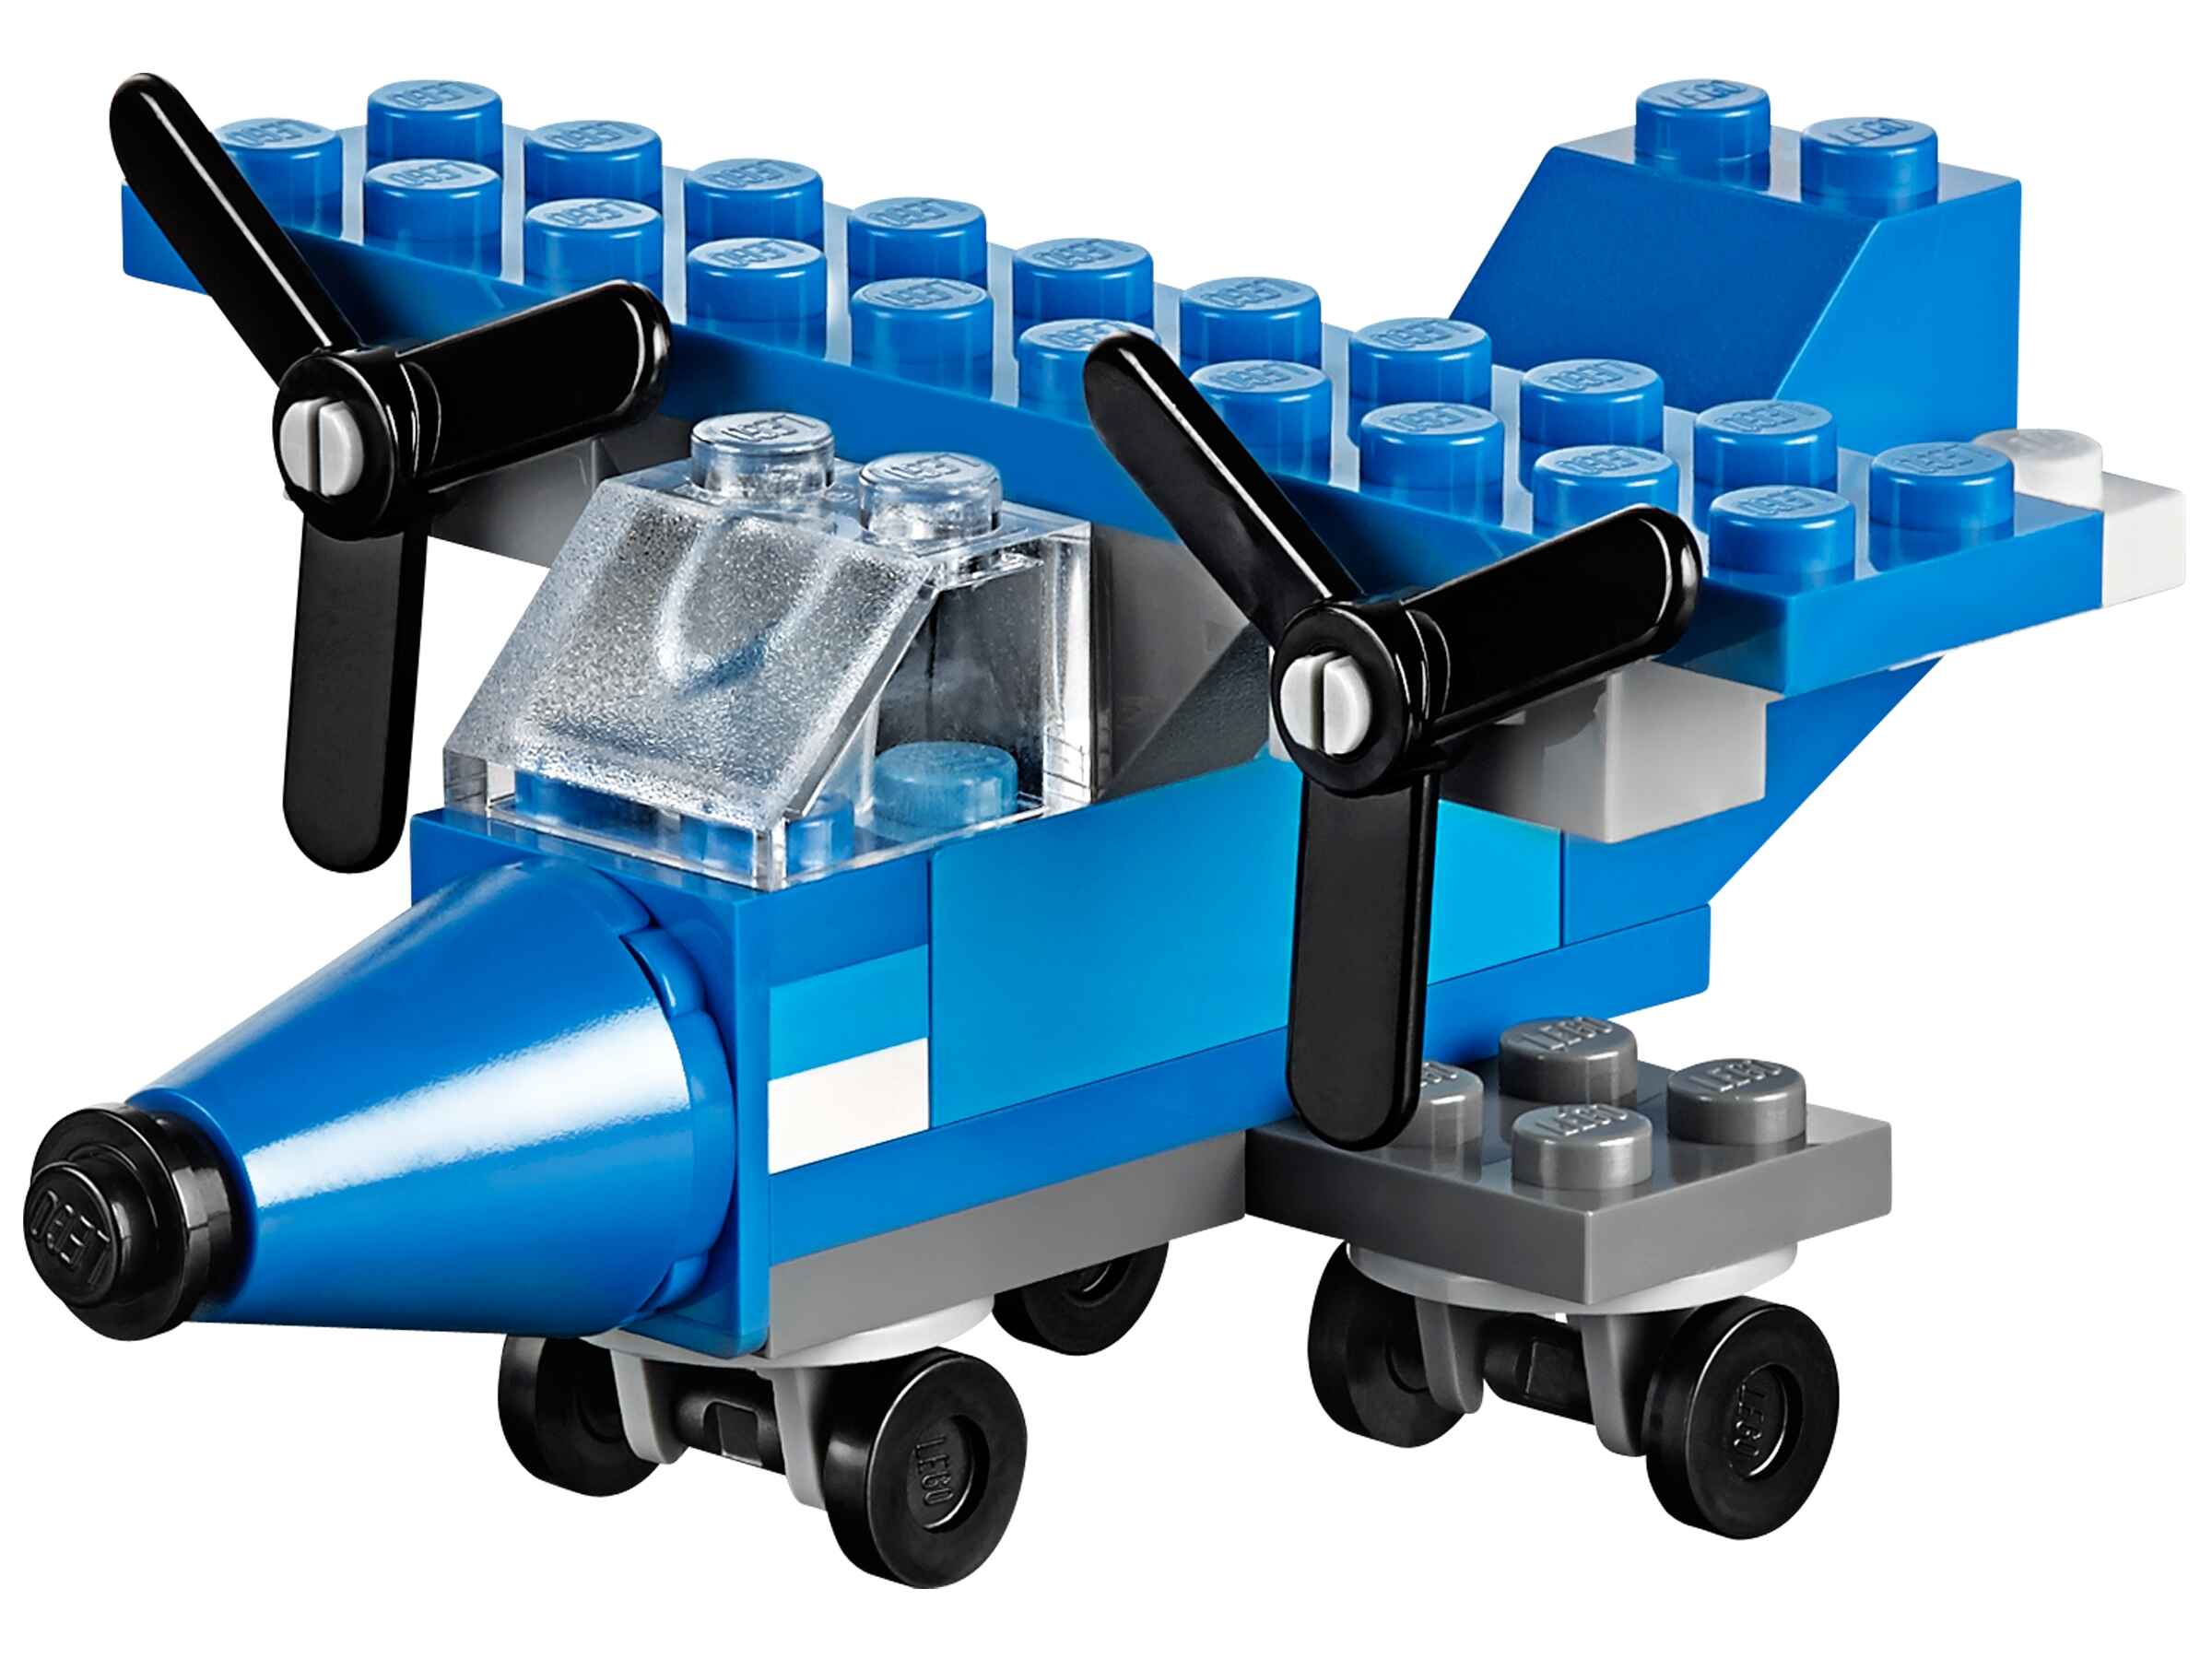 LEGO 10692 Classic Bausteine-Set mit Aufbewahrungsbox, 29 verschiedene Farben 